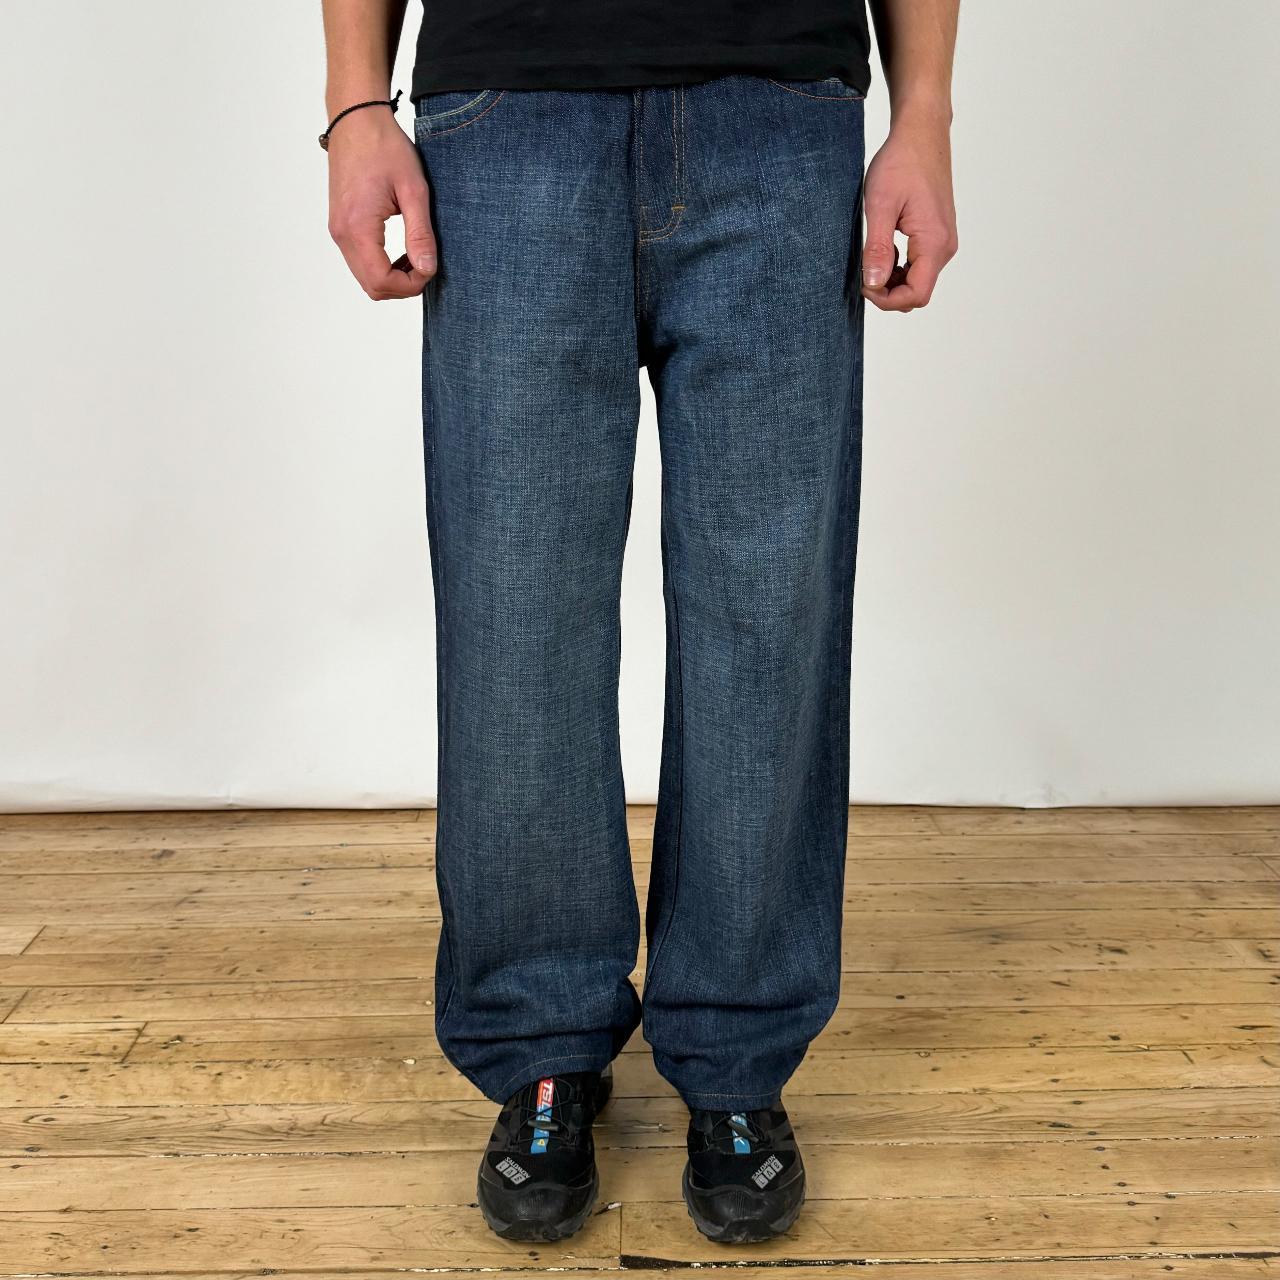 Vintage Lng Baggy Jeans. Beaut baggy fit jeans. Rare... - Depop